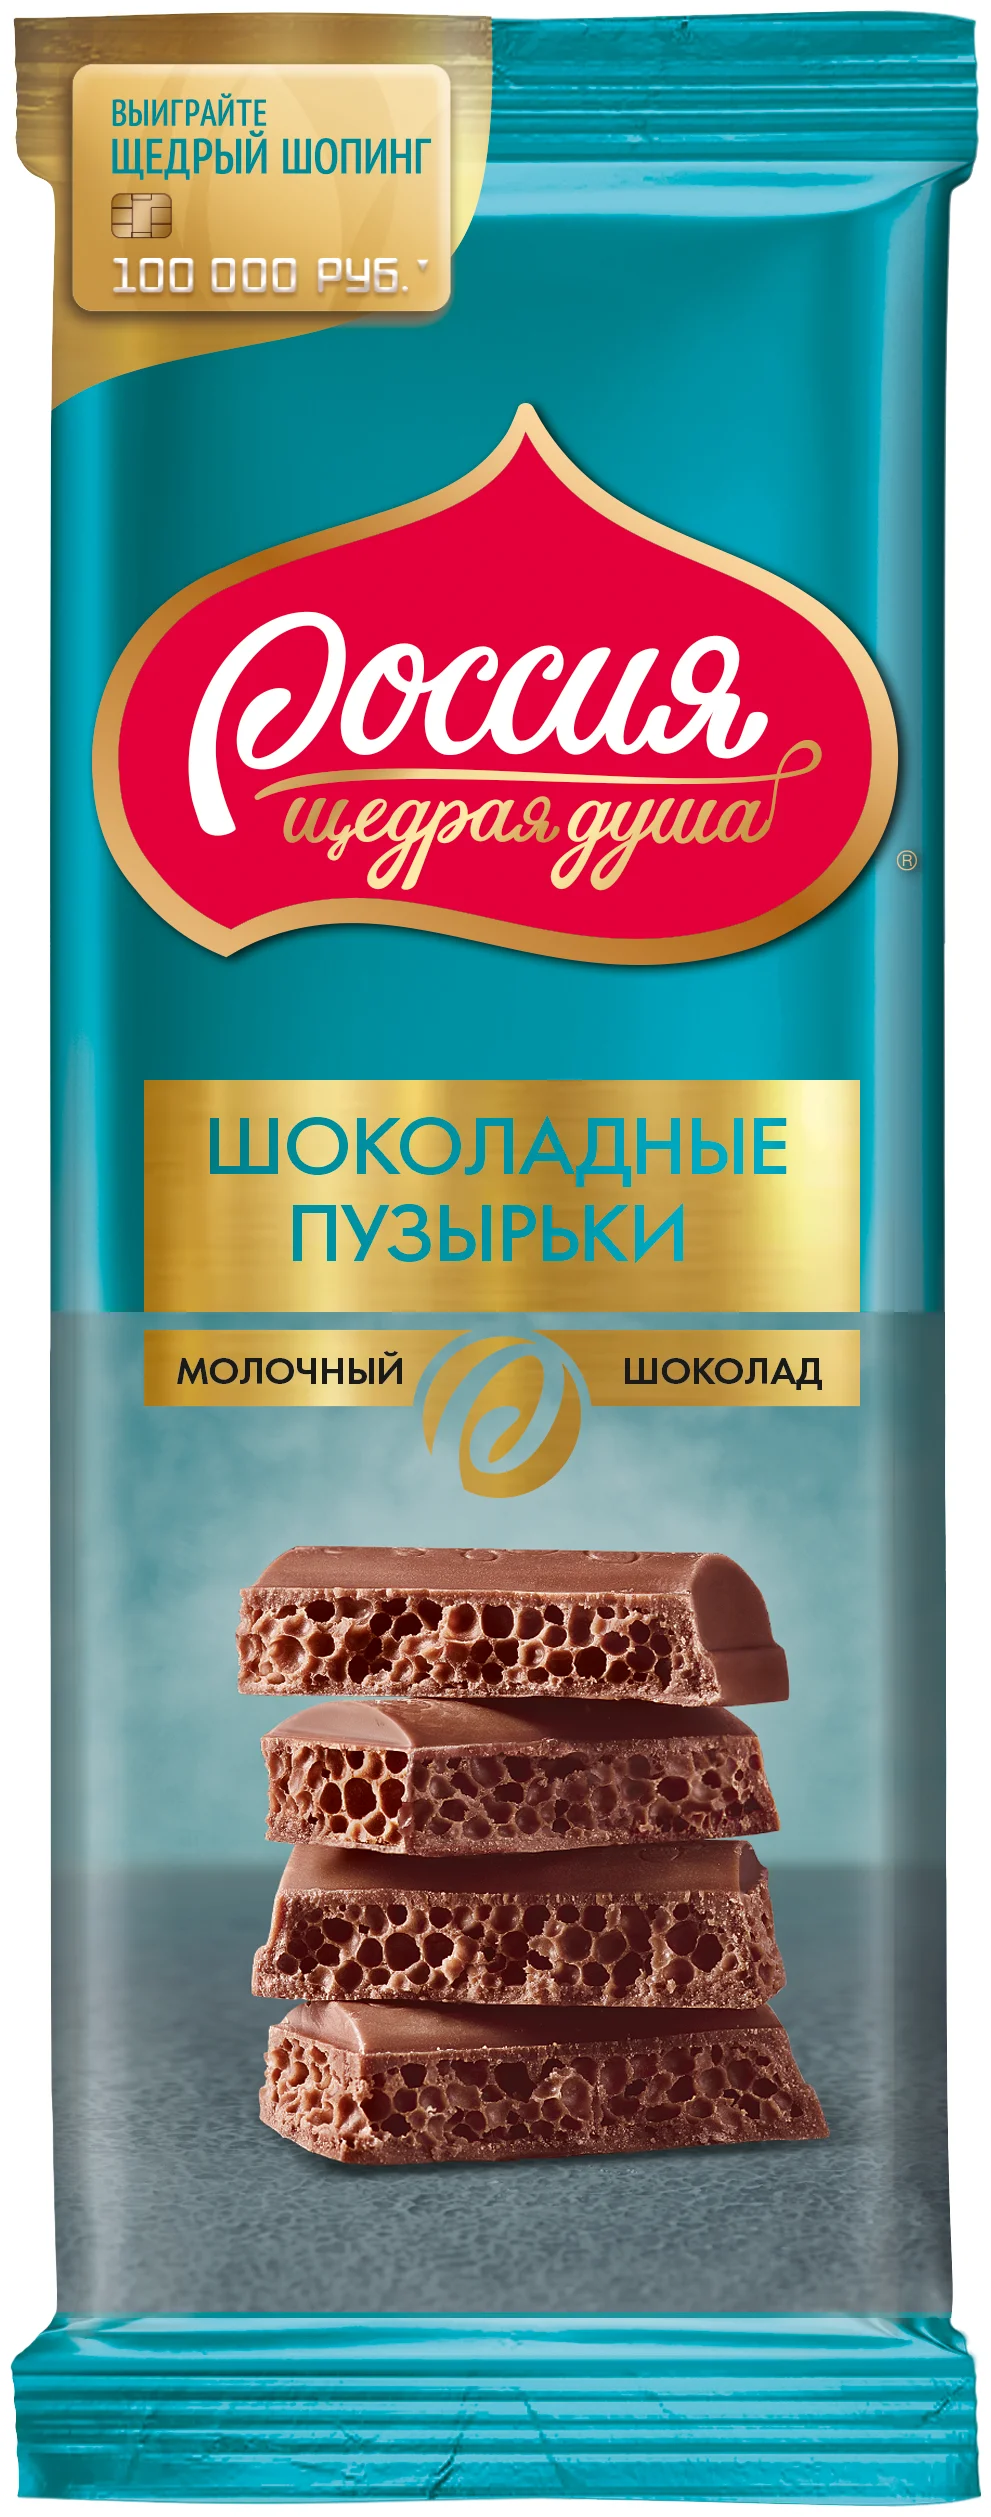 Россия - Щедрая душа! "Пористый" - вид шоколада: молочный, пористый